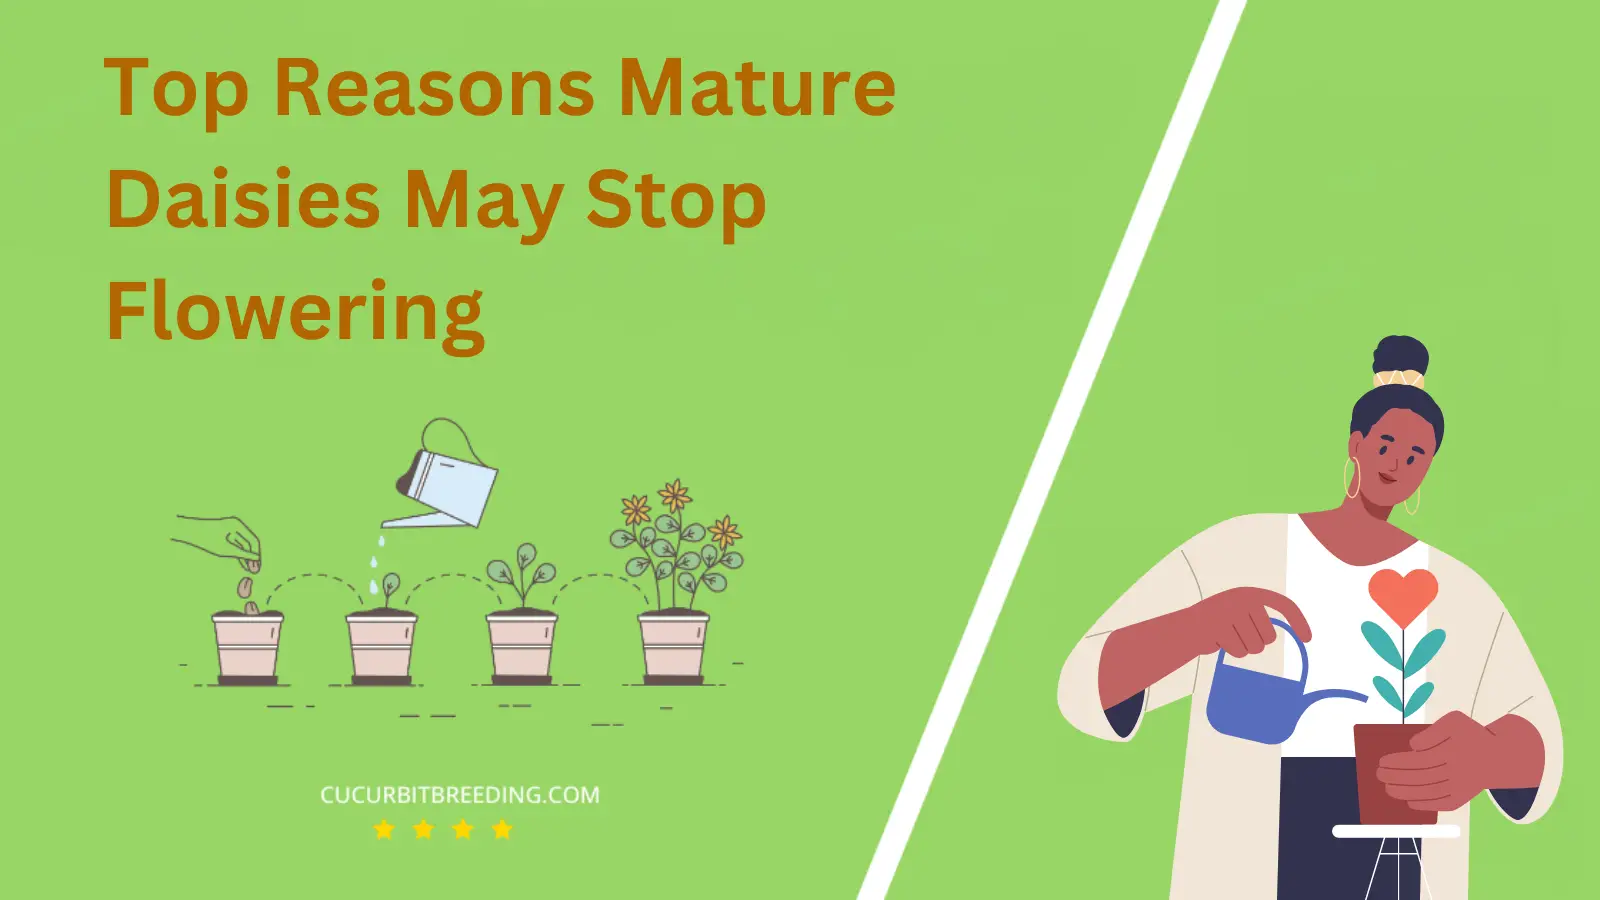 Top Reasons Mature Daisies May Stop Flowering